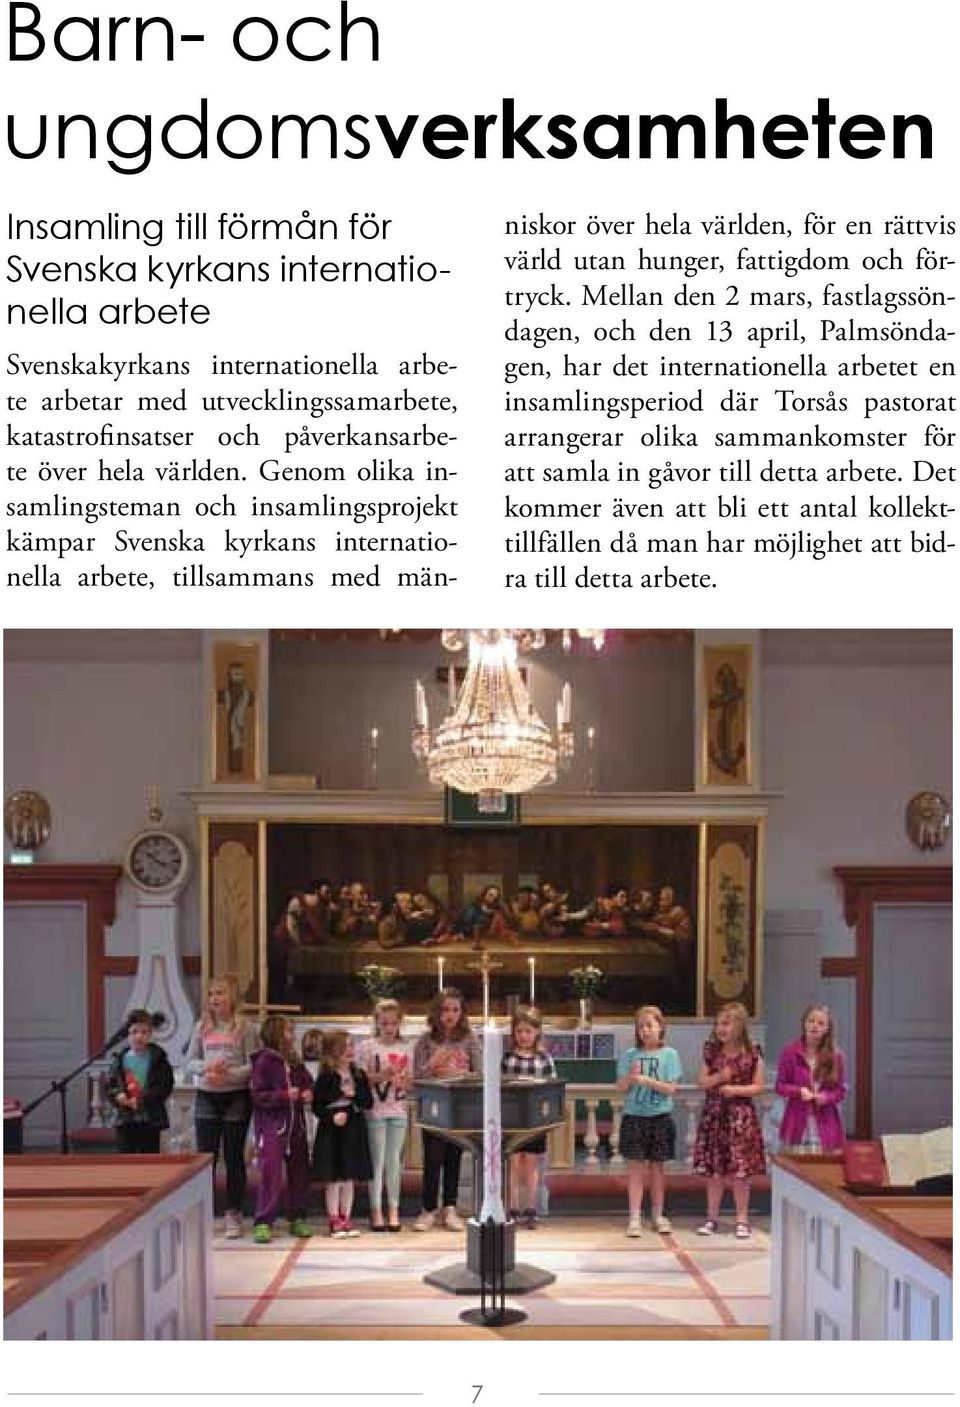 Genom olika insamlingsteman och insamlingsprojekt kämpar Svenska kyrkans internationella arbete, tillsammans med människor över hela världen, för en rättvis värld utan hunger, fattigdom